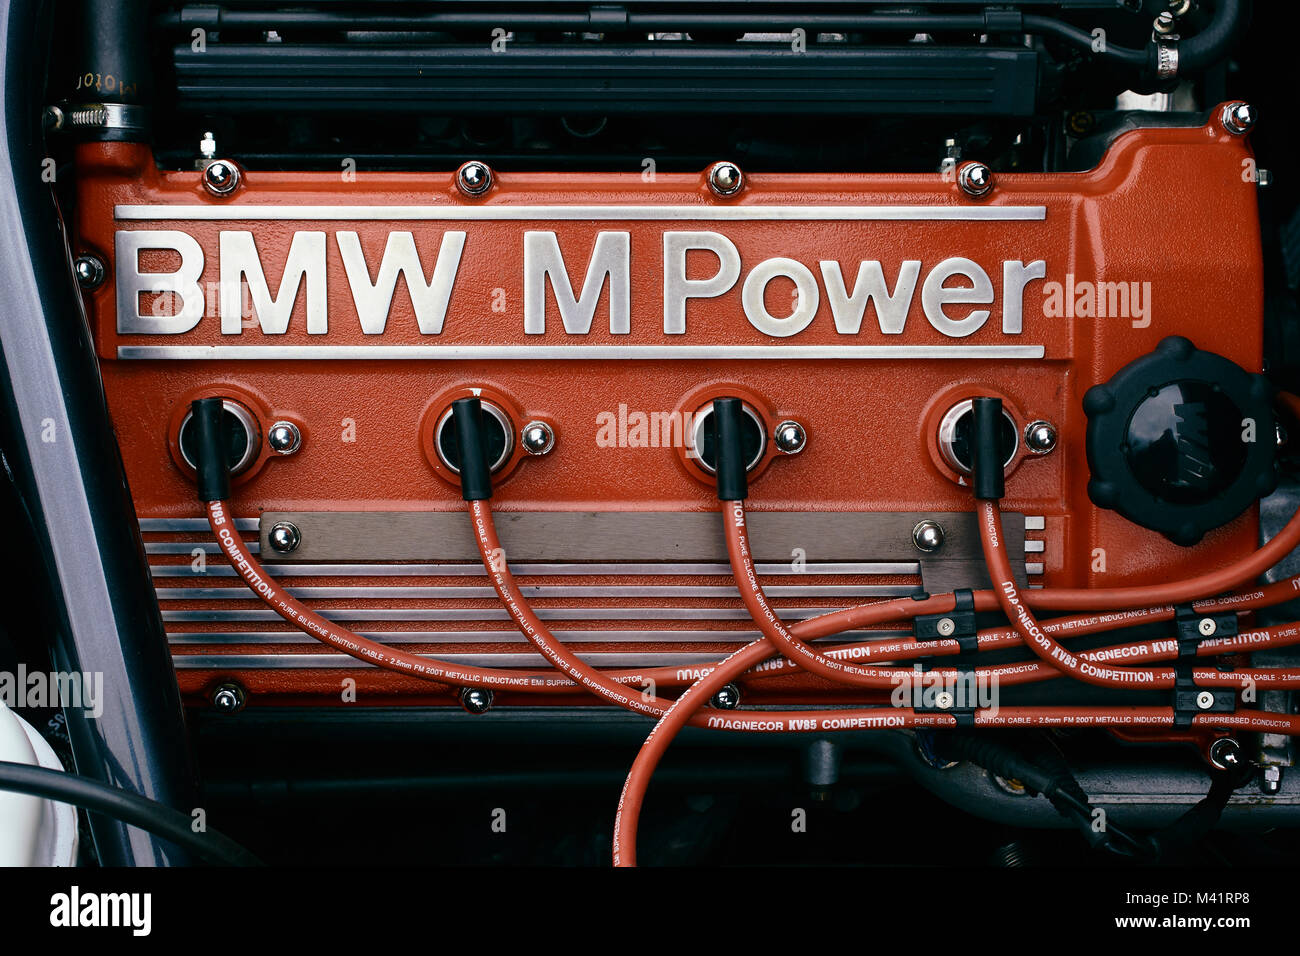 https://c8.alamy.com/compde/m41rp8/detaillierte-darstellung-der-motorraum-eines-80er-bmw-m3-mit-einem-roten-bmw-m-power-cam-abdeckung-m41rp8.jpg